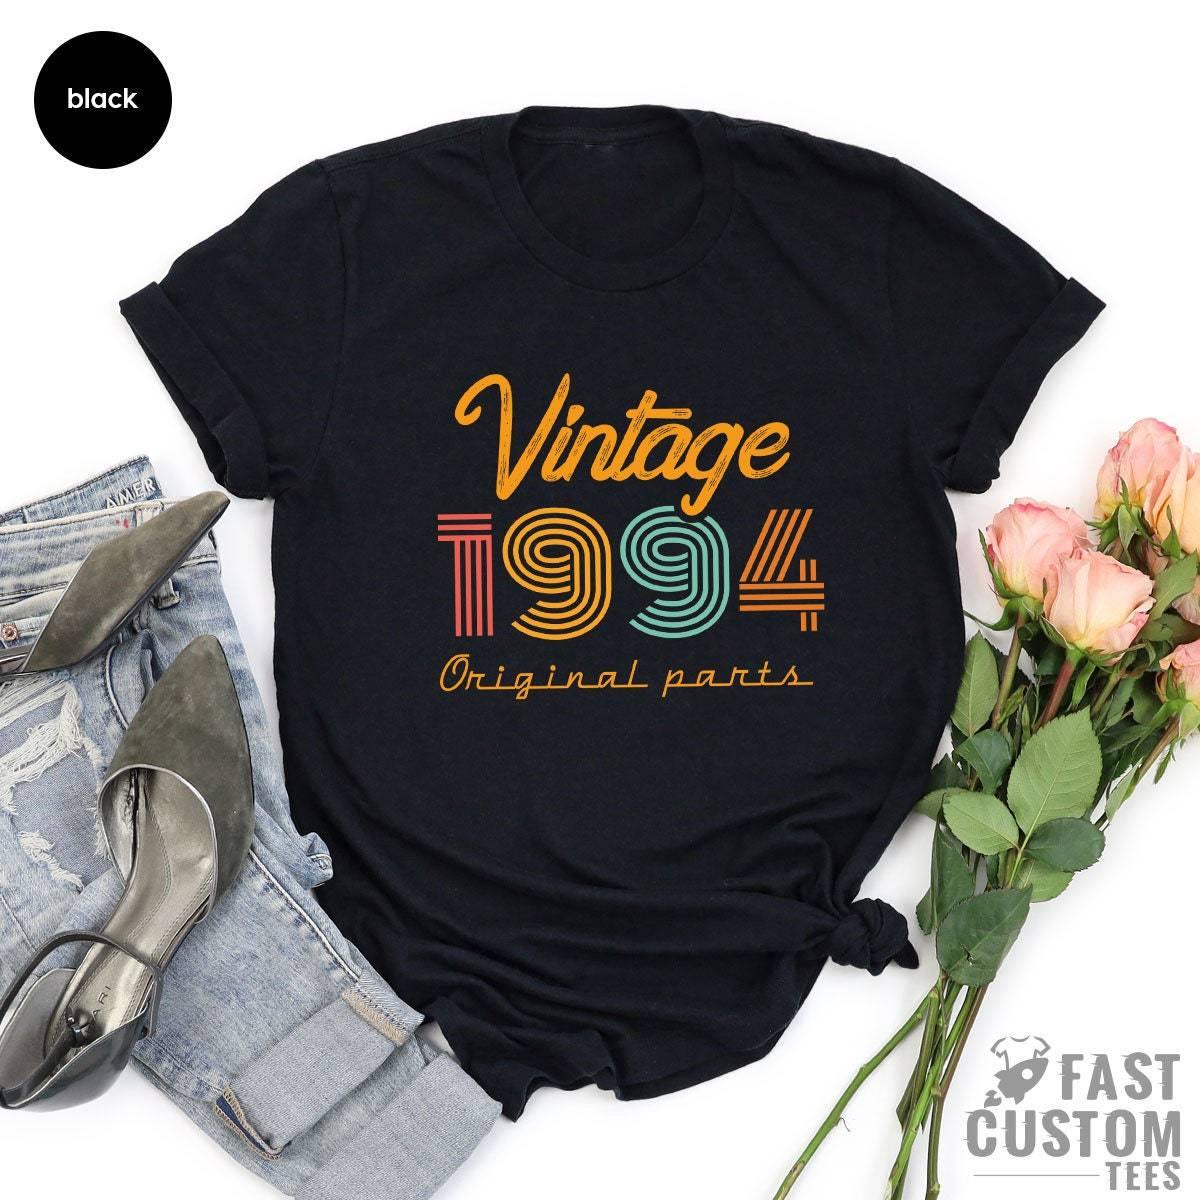 27th Birthday Shirt, Vintage T Shirt, Vintage 1994 Shirt, 27th Birthday Gift For Women, 27th Birthday Shirt Men, Retro Shirt, Vintage Shirts - Fastdeliverytees.com